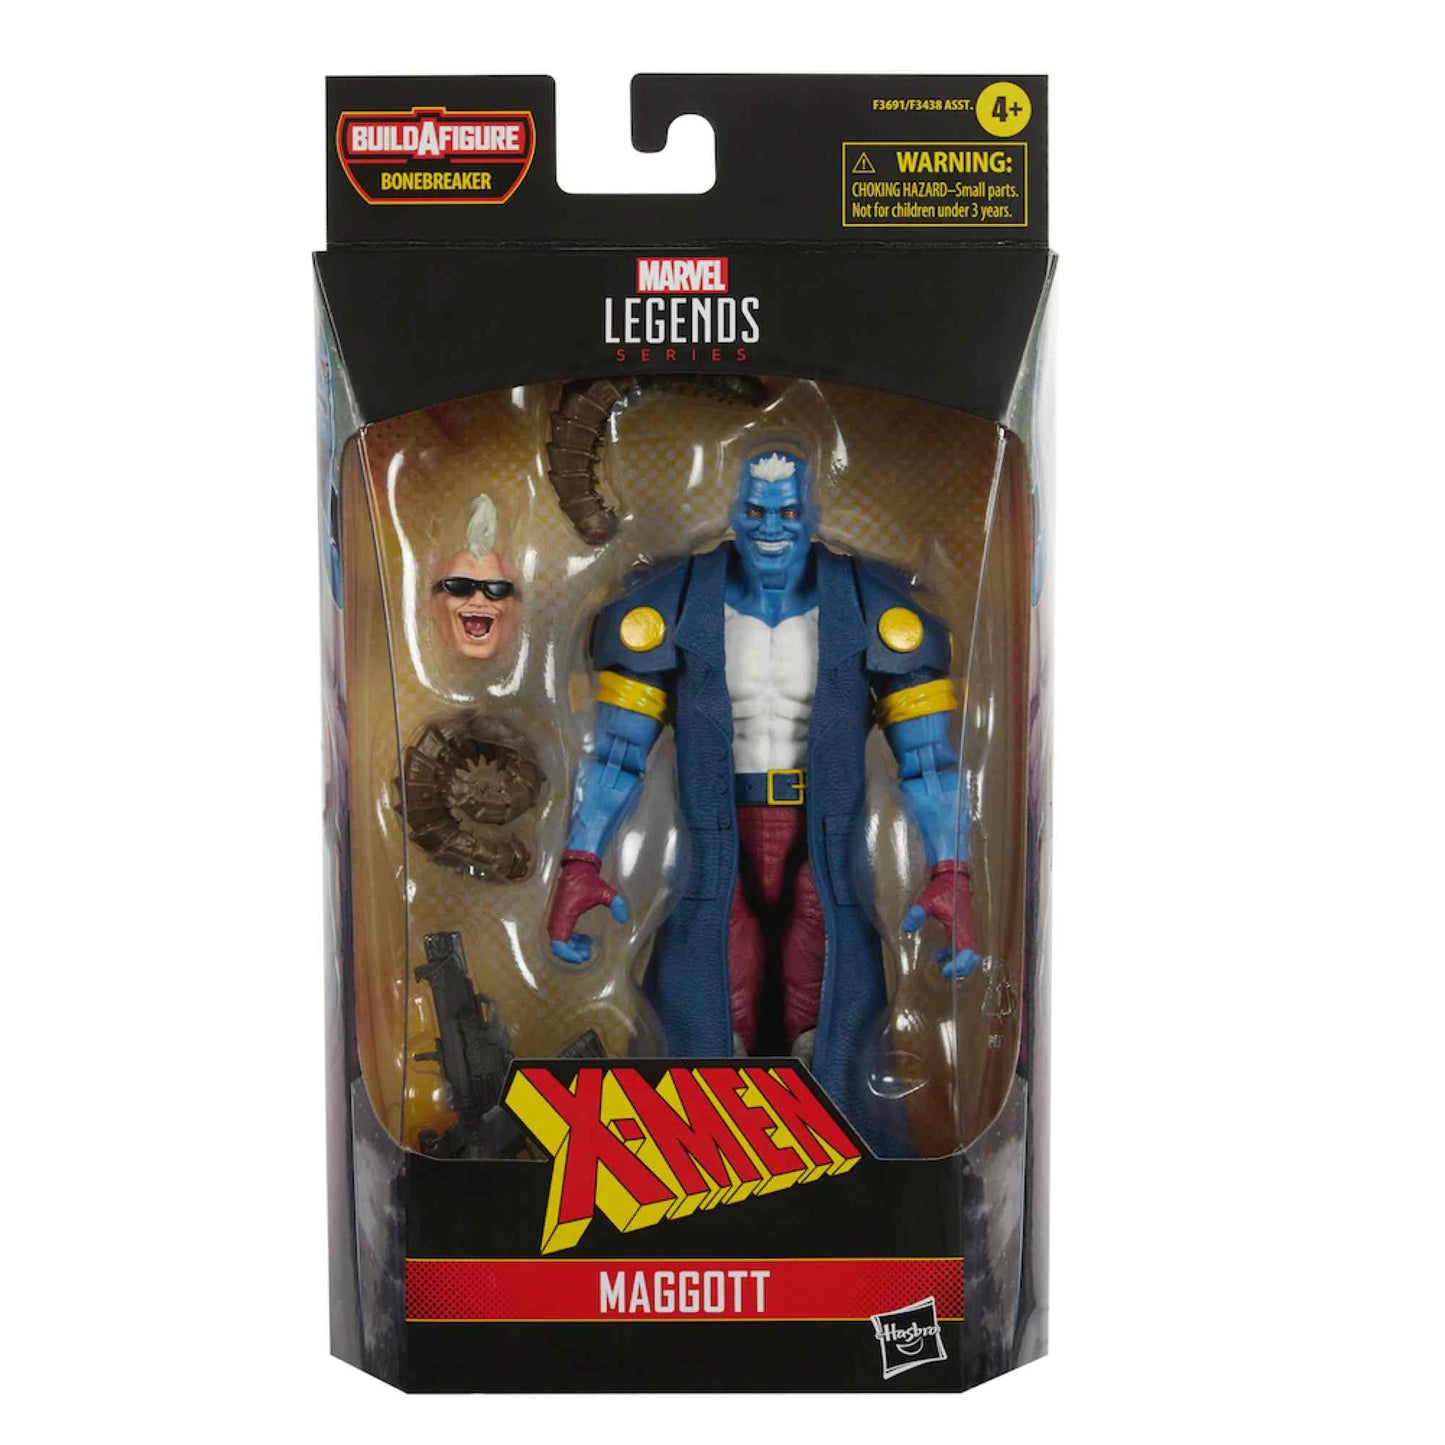 Maggott - X-Men Hasbro Legends